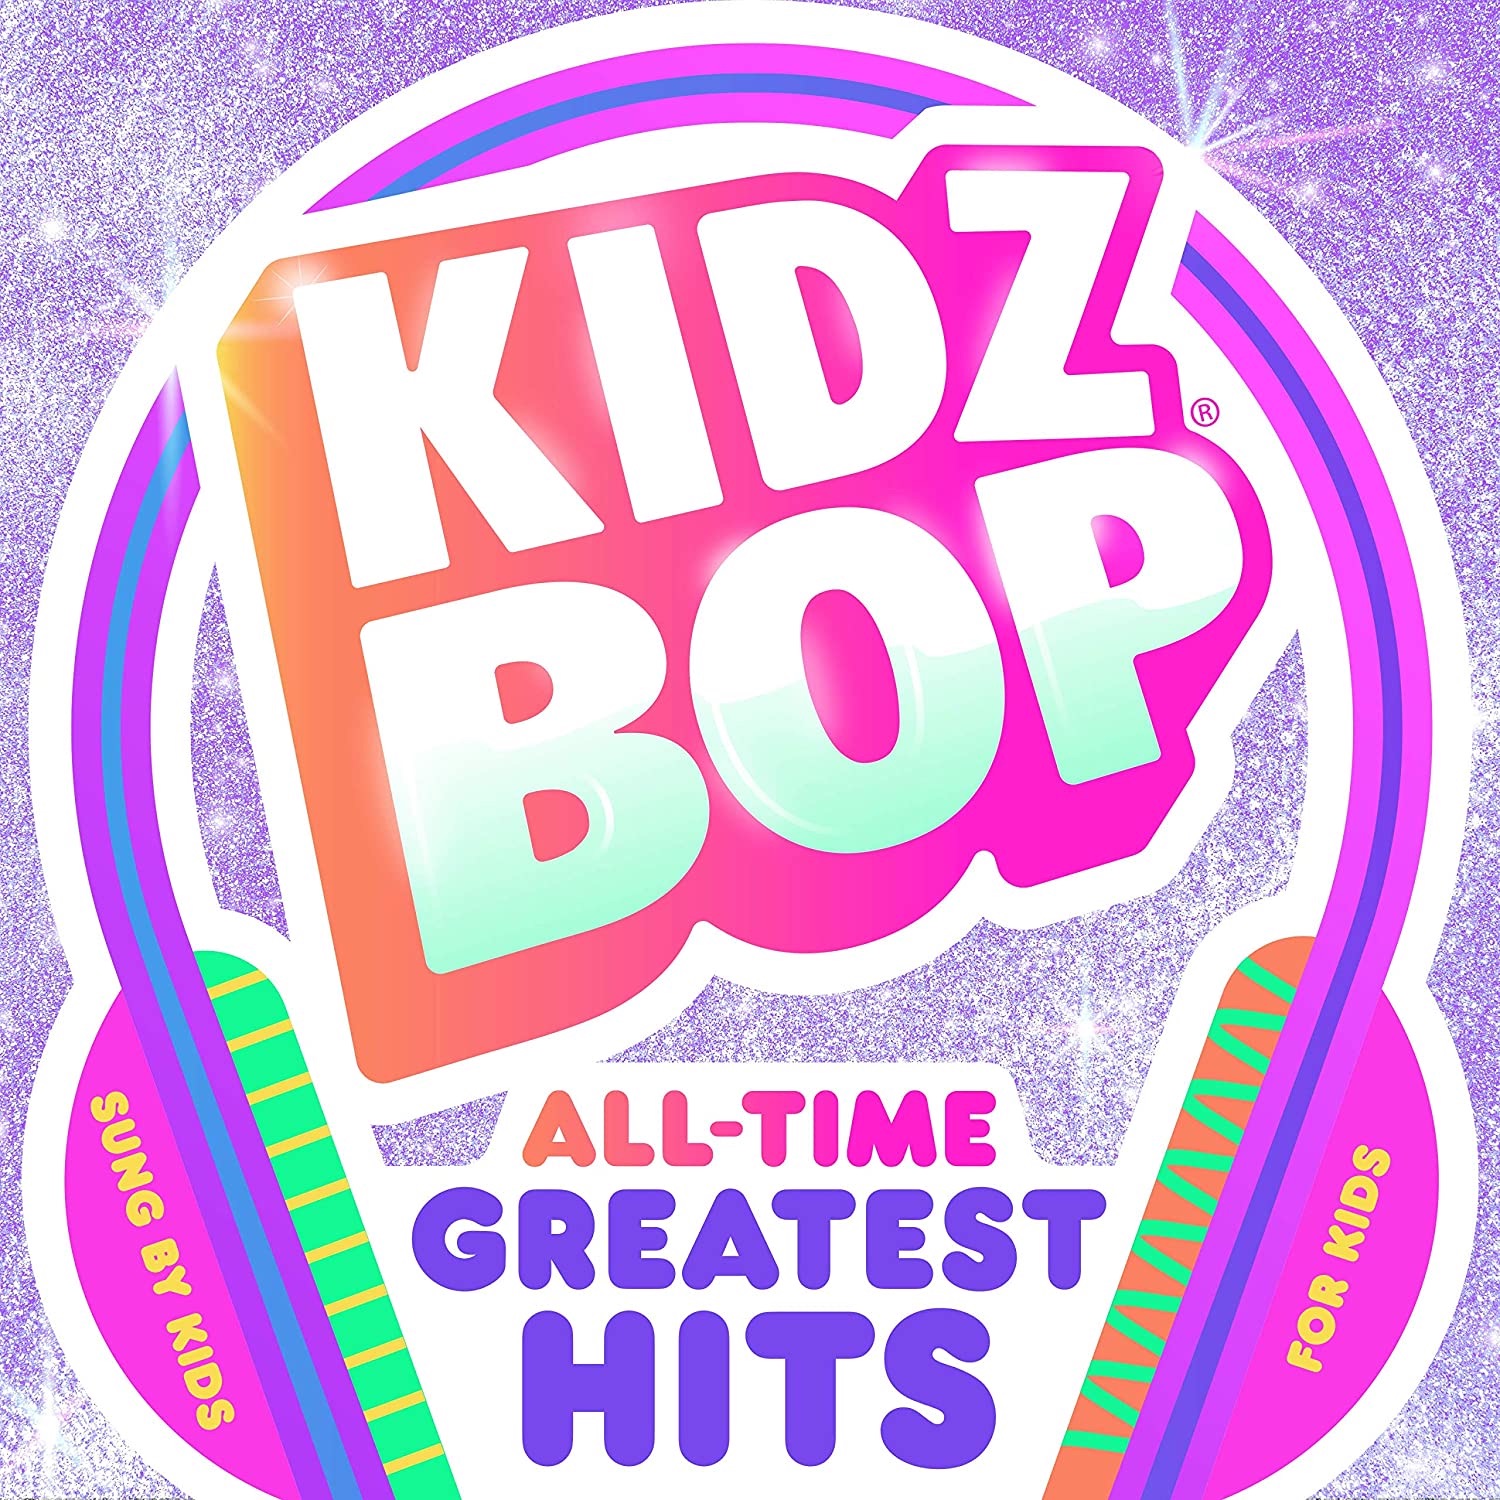 KIDZ BOP All-Time Greatest Hits, Kidz Bop Wiki